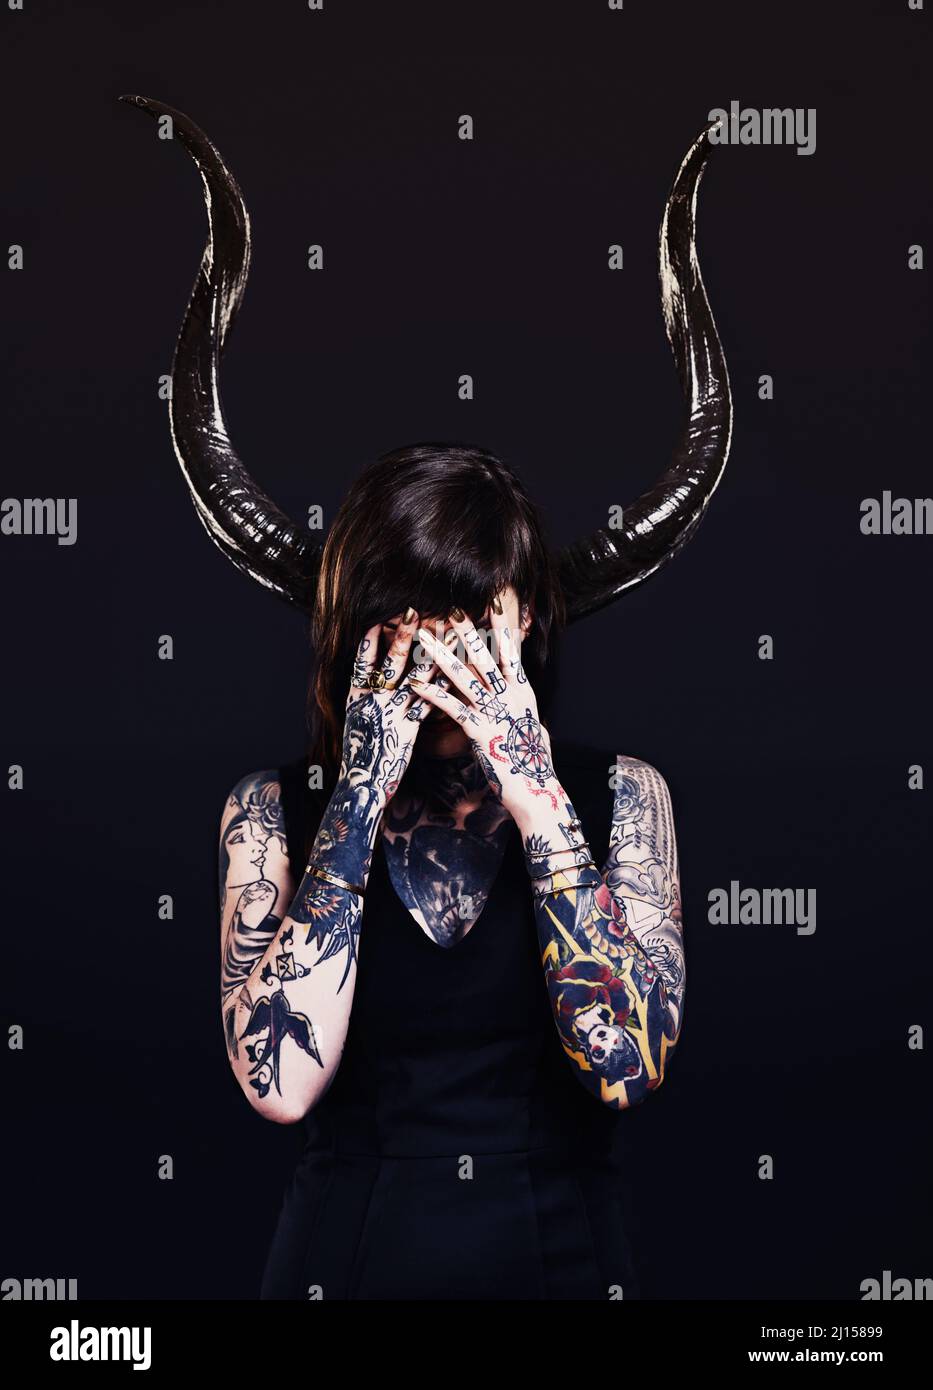 Le côté sombre. Photo studio d'une jeune femme tatouée. Banque D'Images